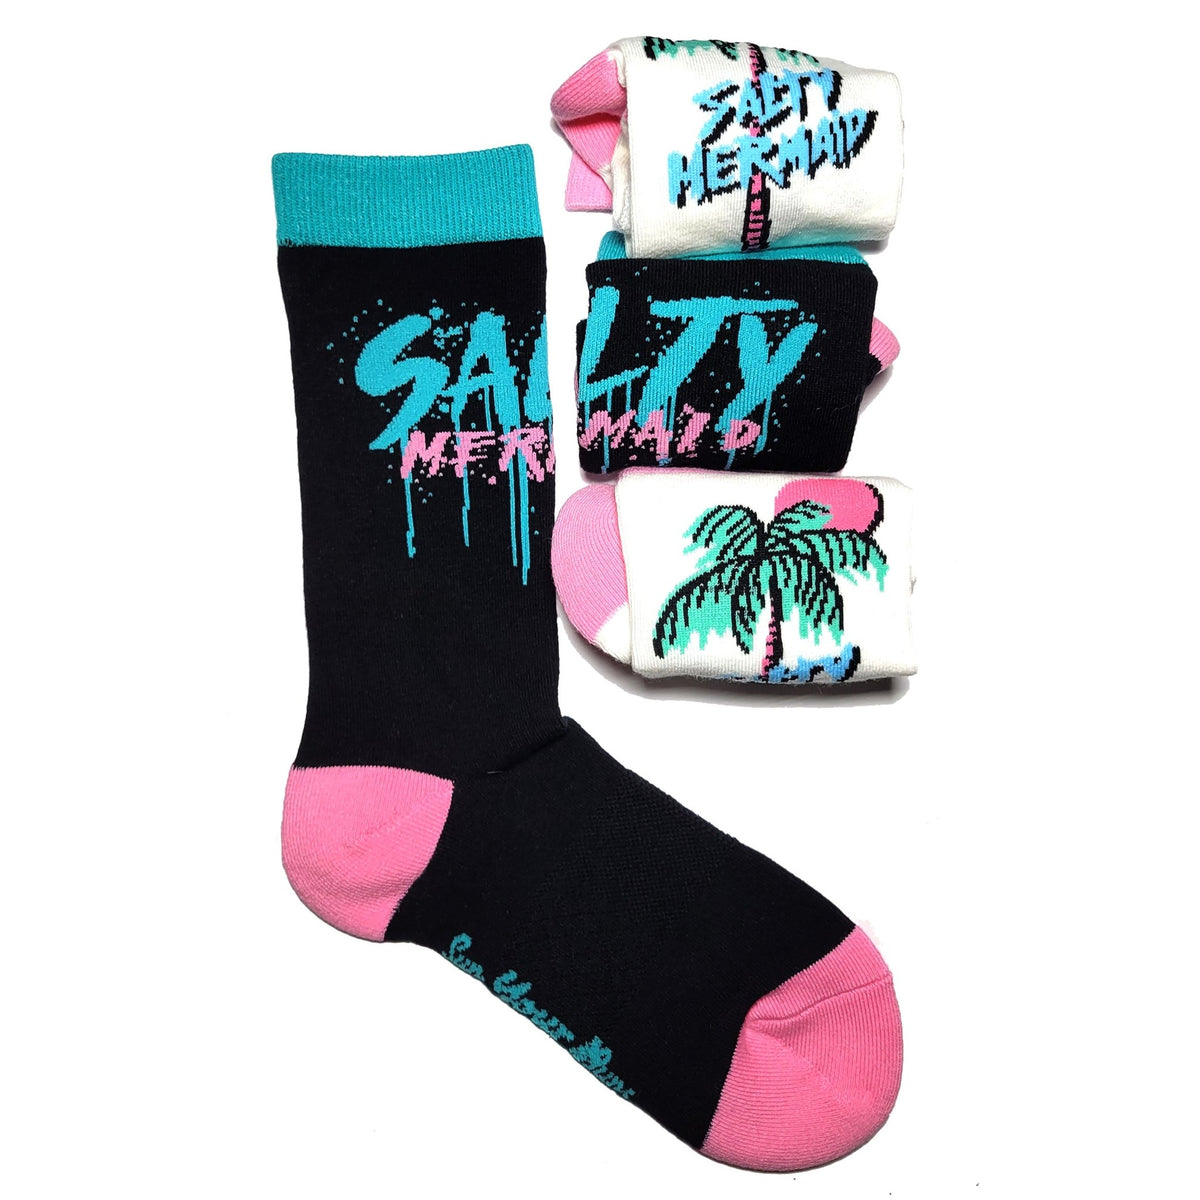 Salty Crew Socks - Black/Teal